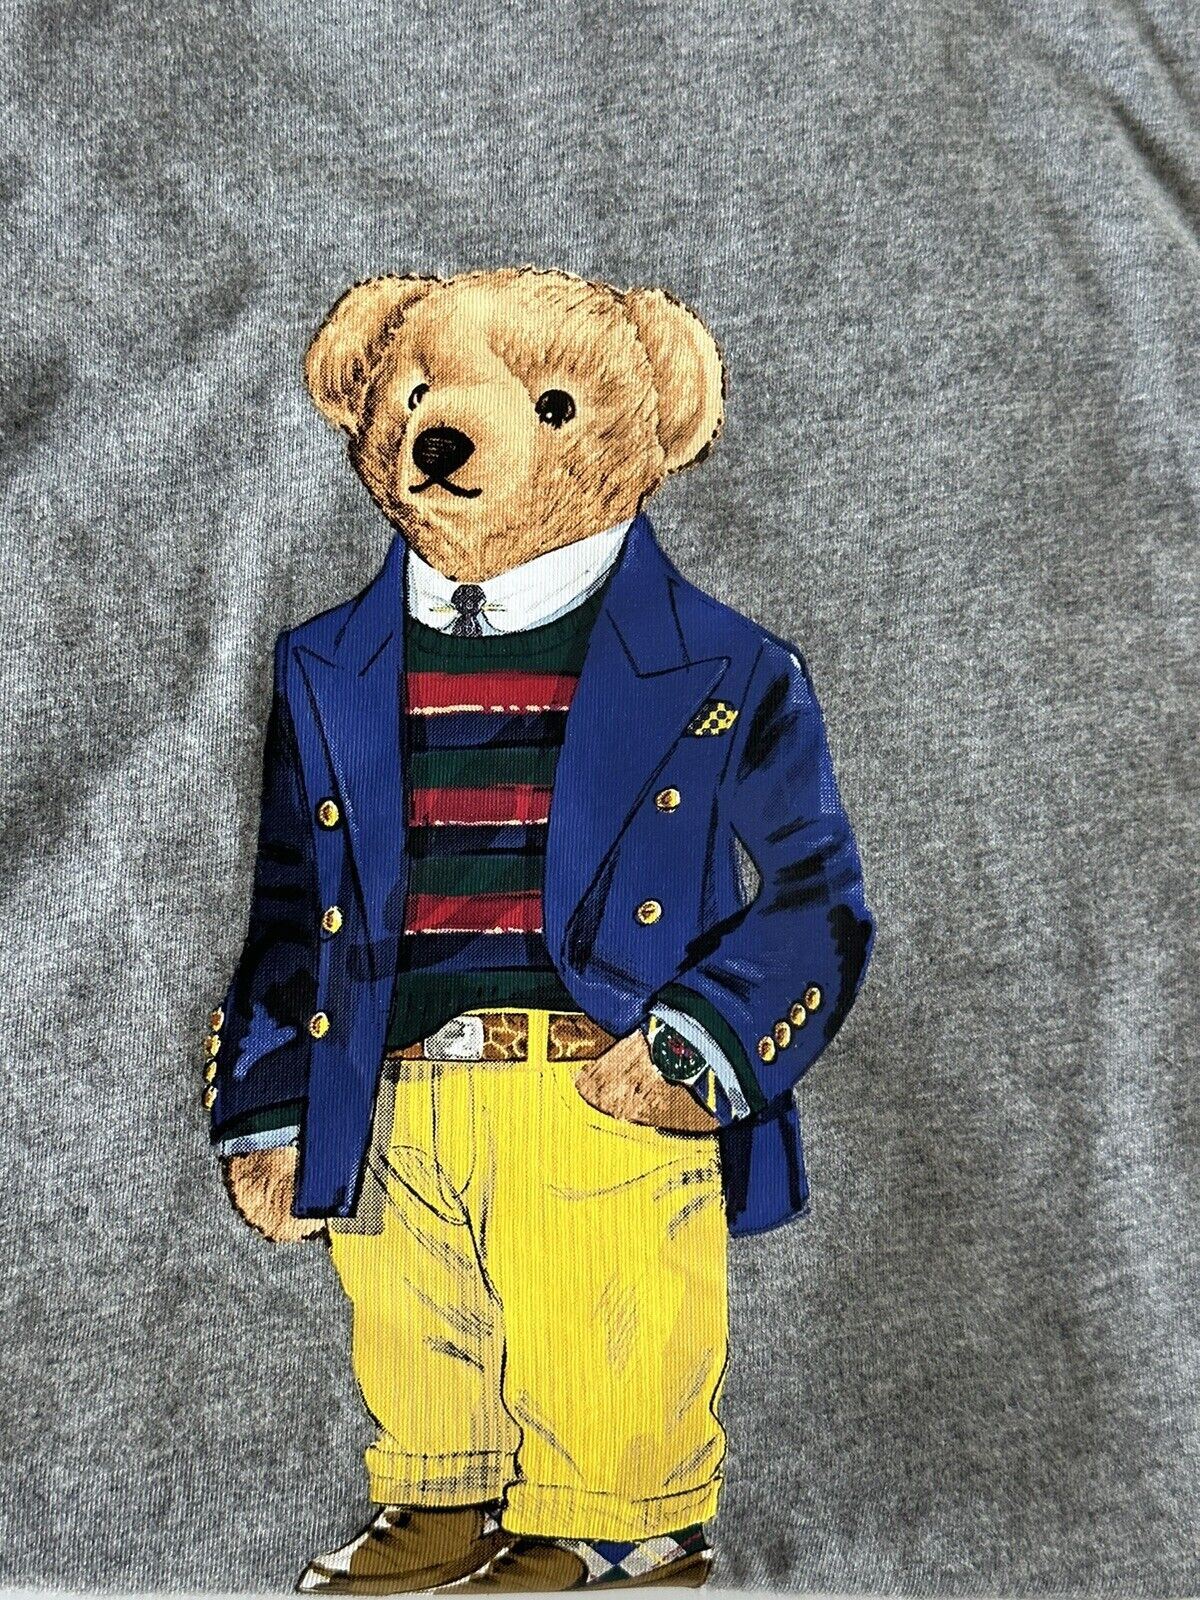 NWT Polo Ralph Lauren Bear Cotton T-Shirt Gray 2XL/2TG